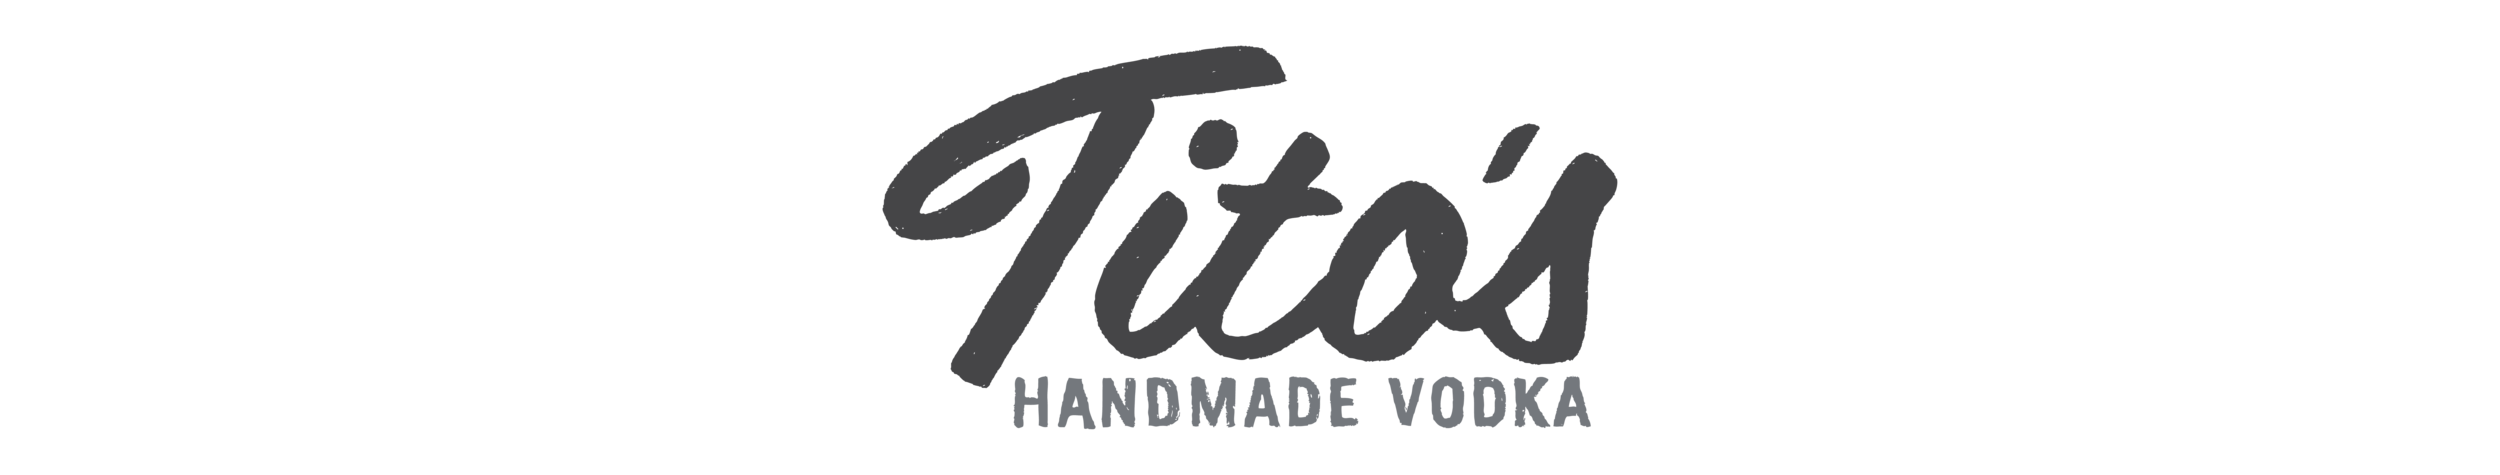 Tito's Logo - Tito's vodka logo png, Picture tito's vodka logo png